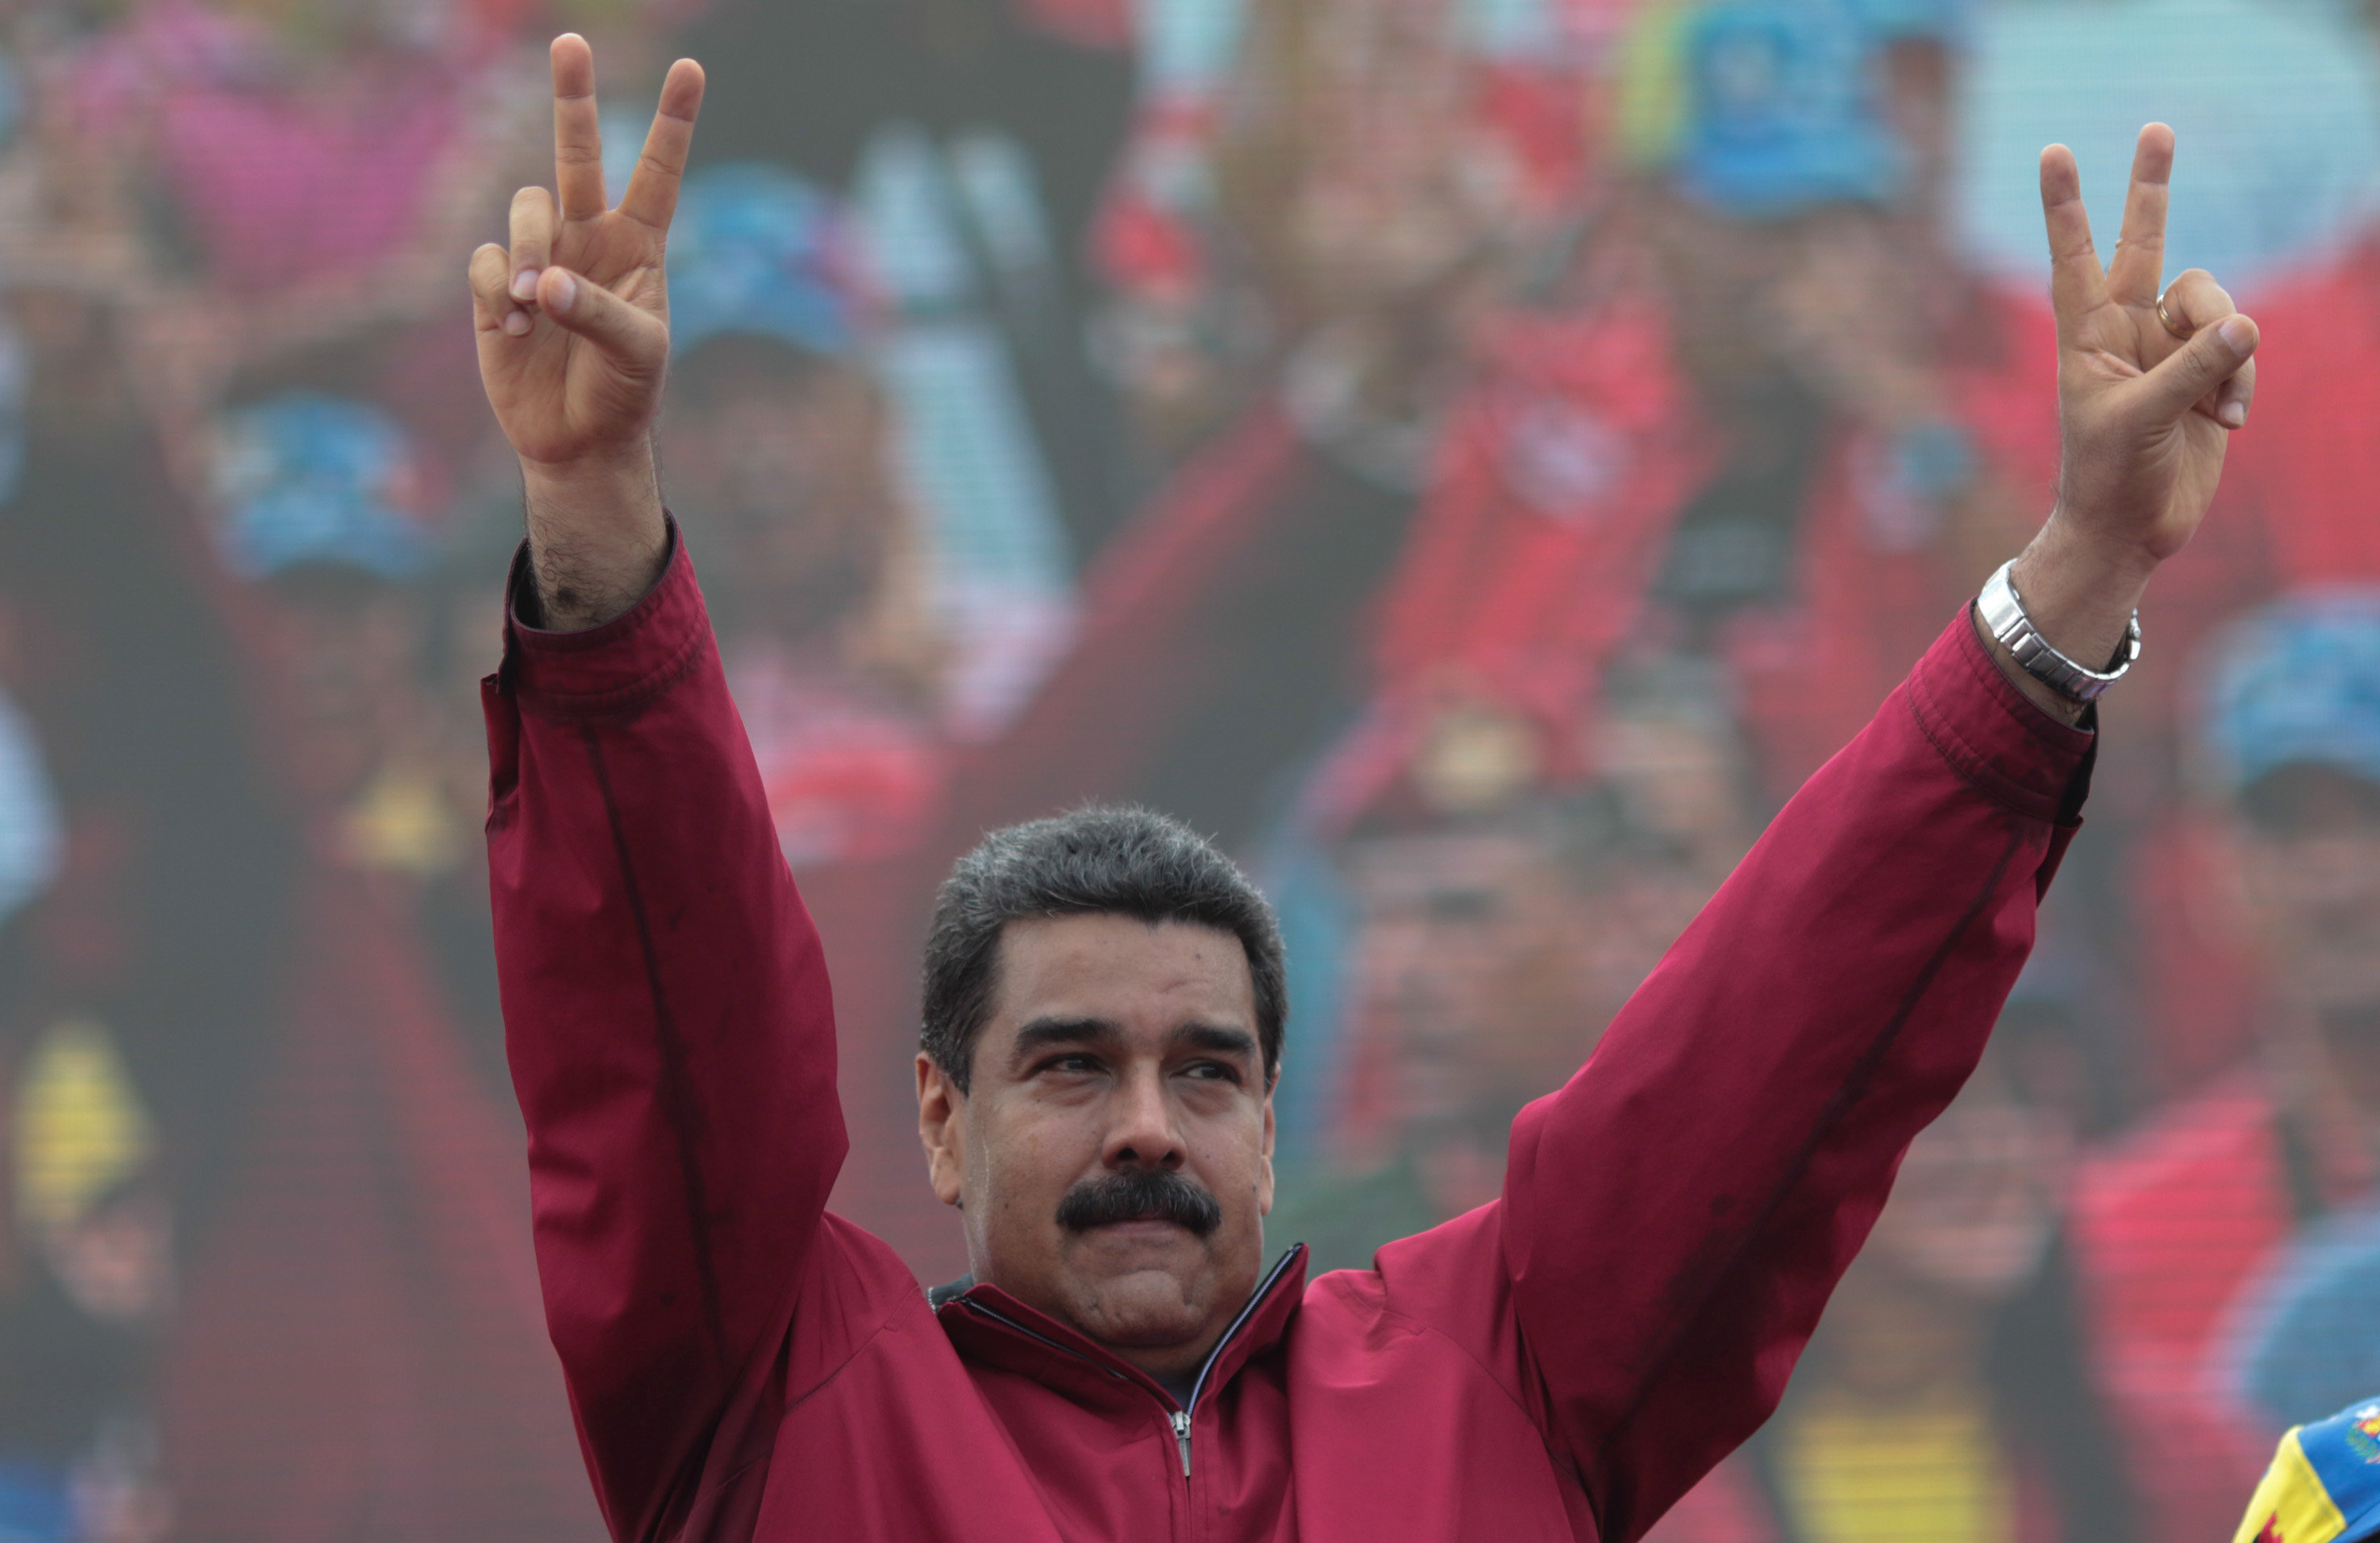 Amaga Maduro con "radicalizar" revolución si EU hace "guerra financiera"